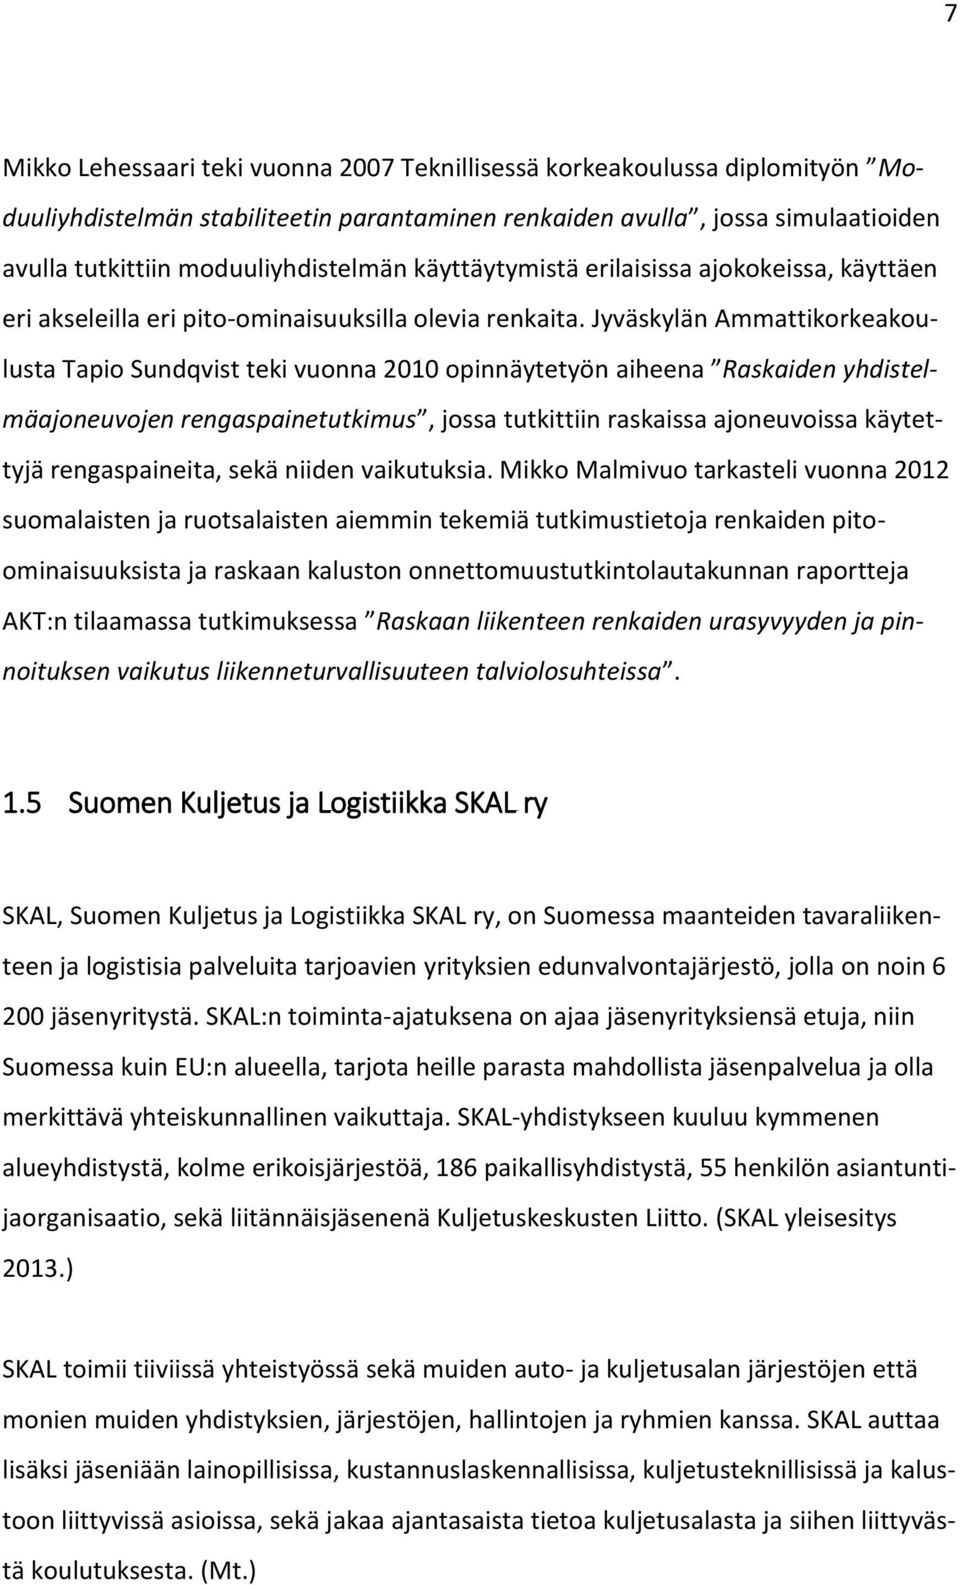 Jyväskylän Ammattikorkeakoulusta Tapio Sundqvist teki vuonna 2010 opinnäytetyön aiheena Raskaiden yhdistelmäajoneuvojen rengaspainetutkimus, jossa tutkittiin raskaissa ajoneuvoissa käytettyjä